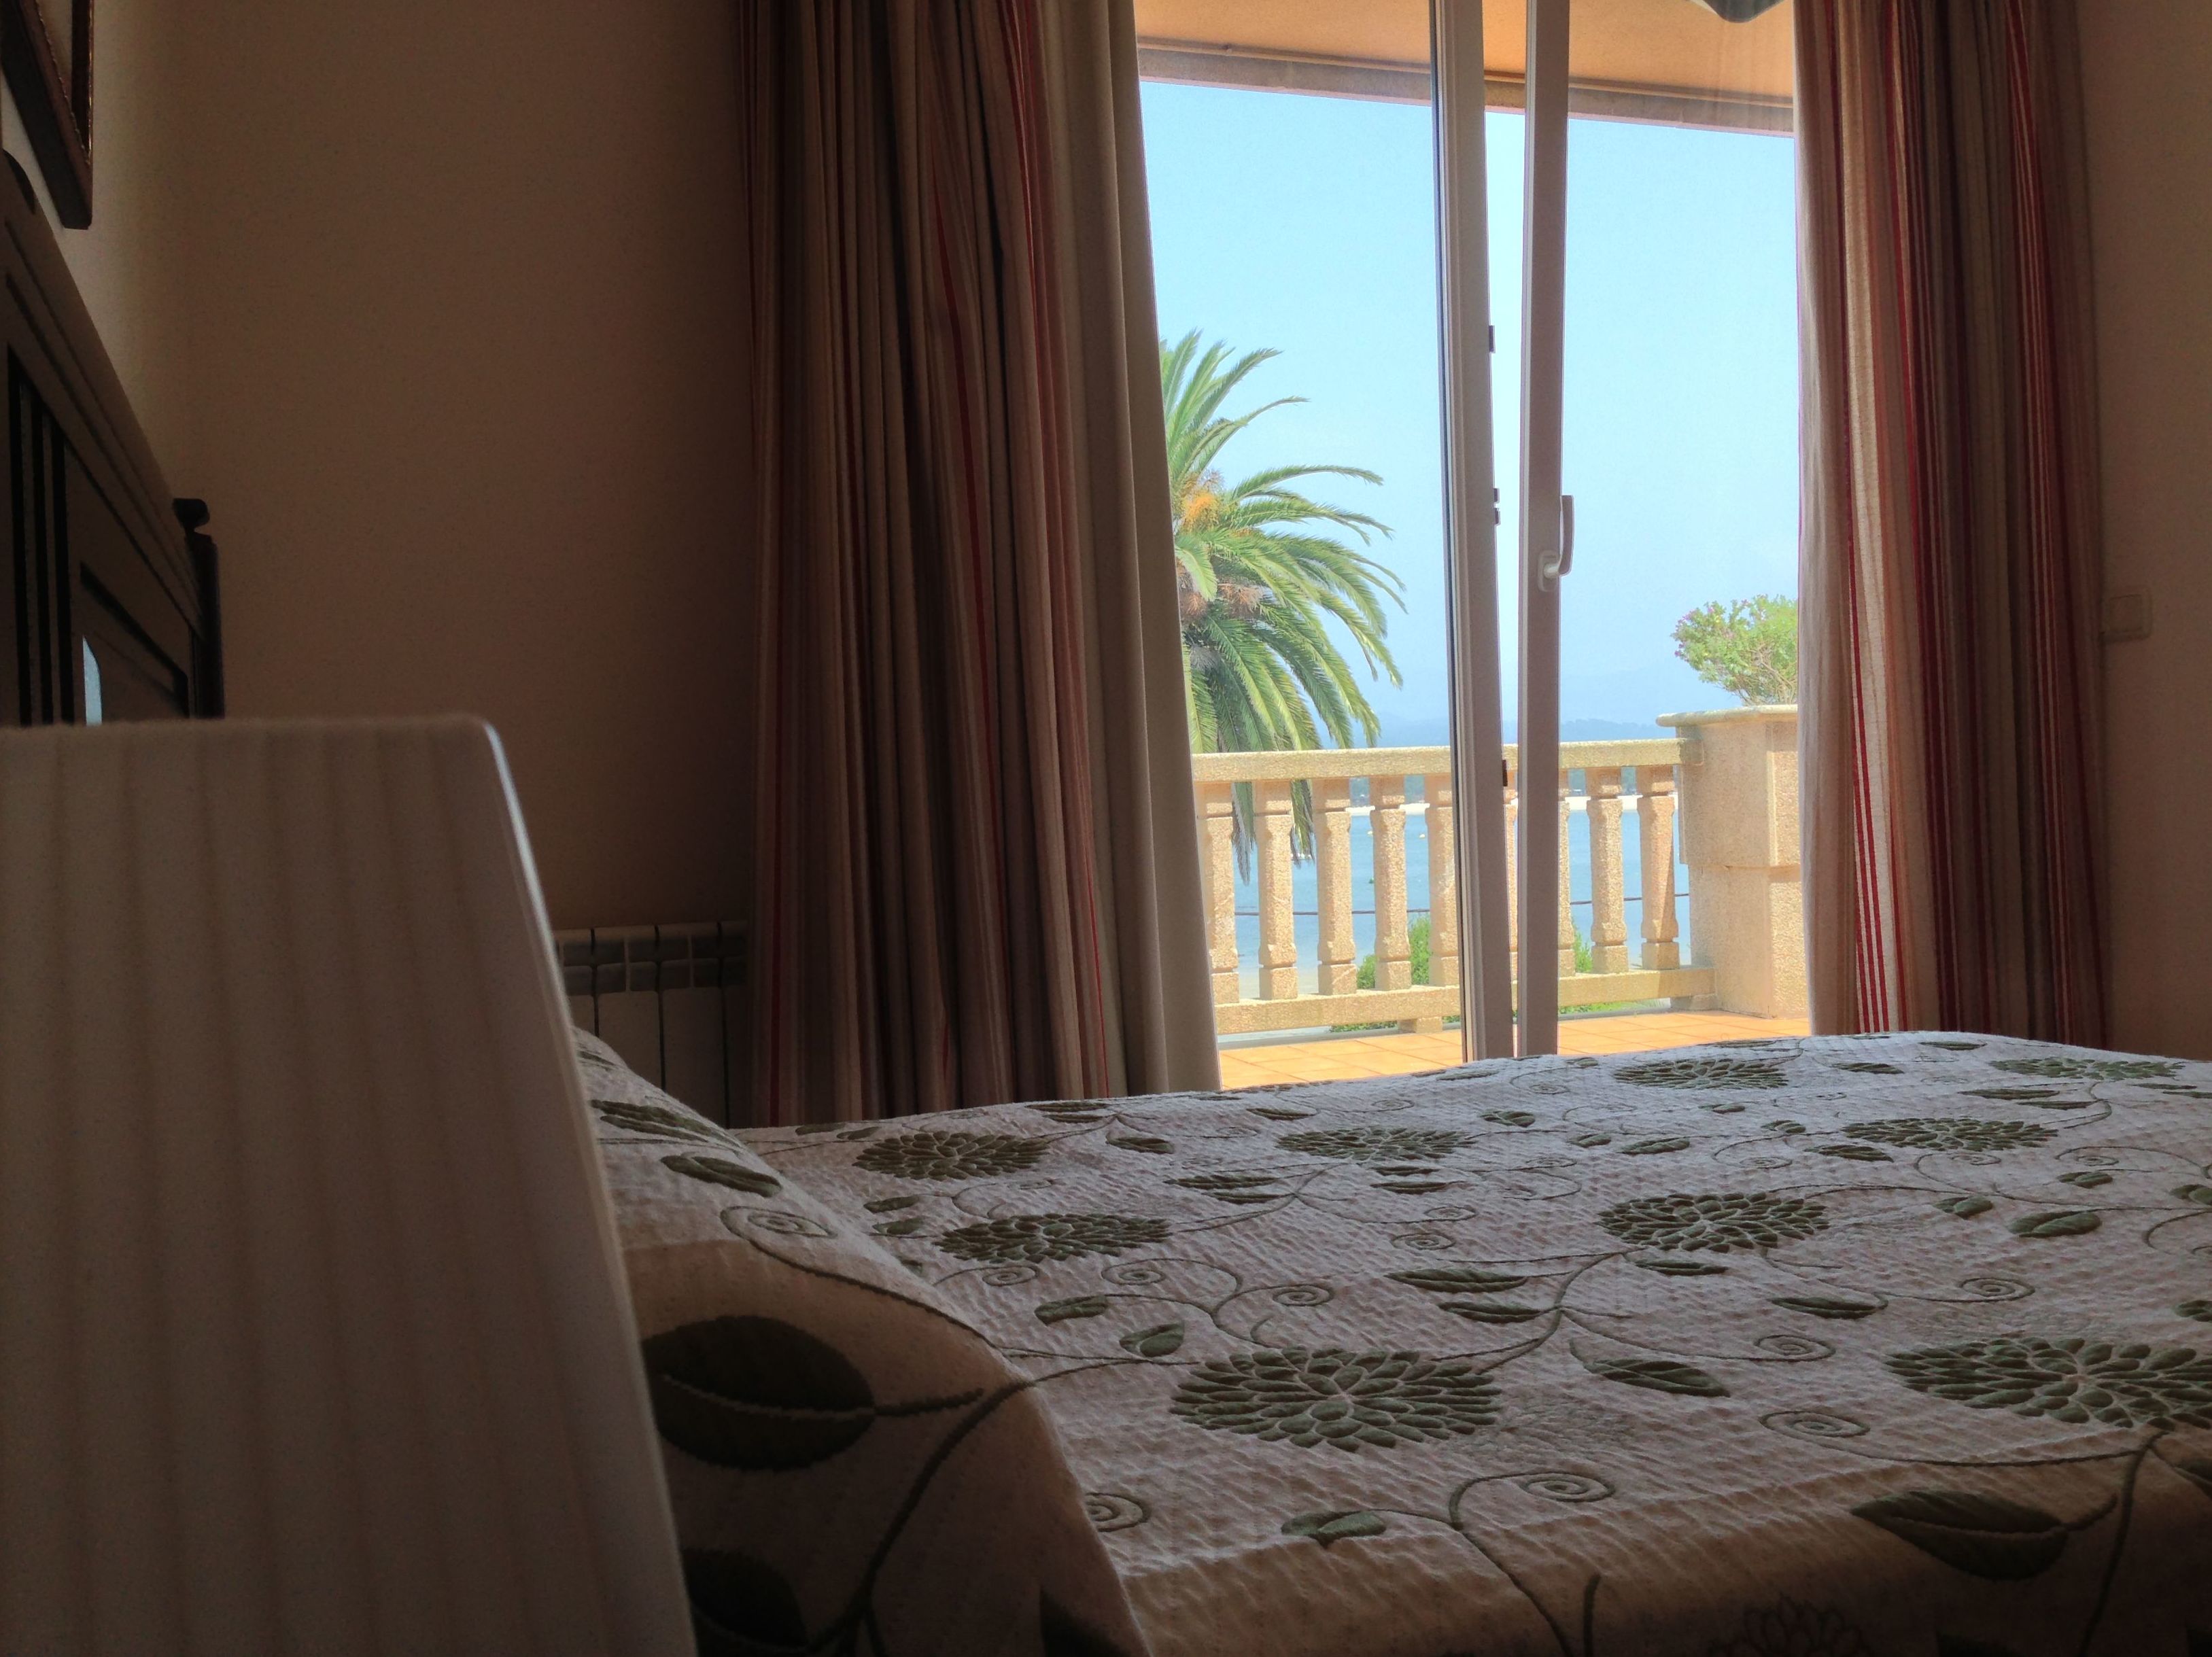 Dormitorio doble con salida a la terraza privada y con vistas al mar